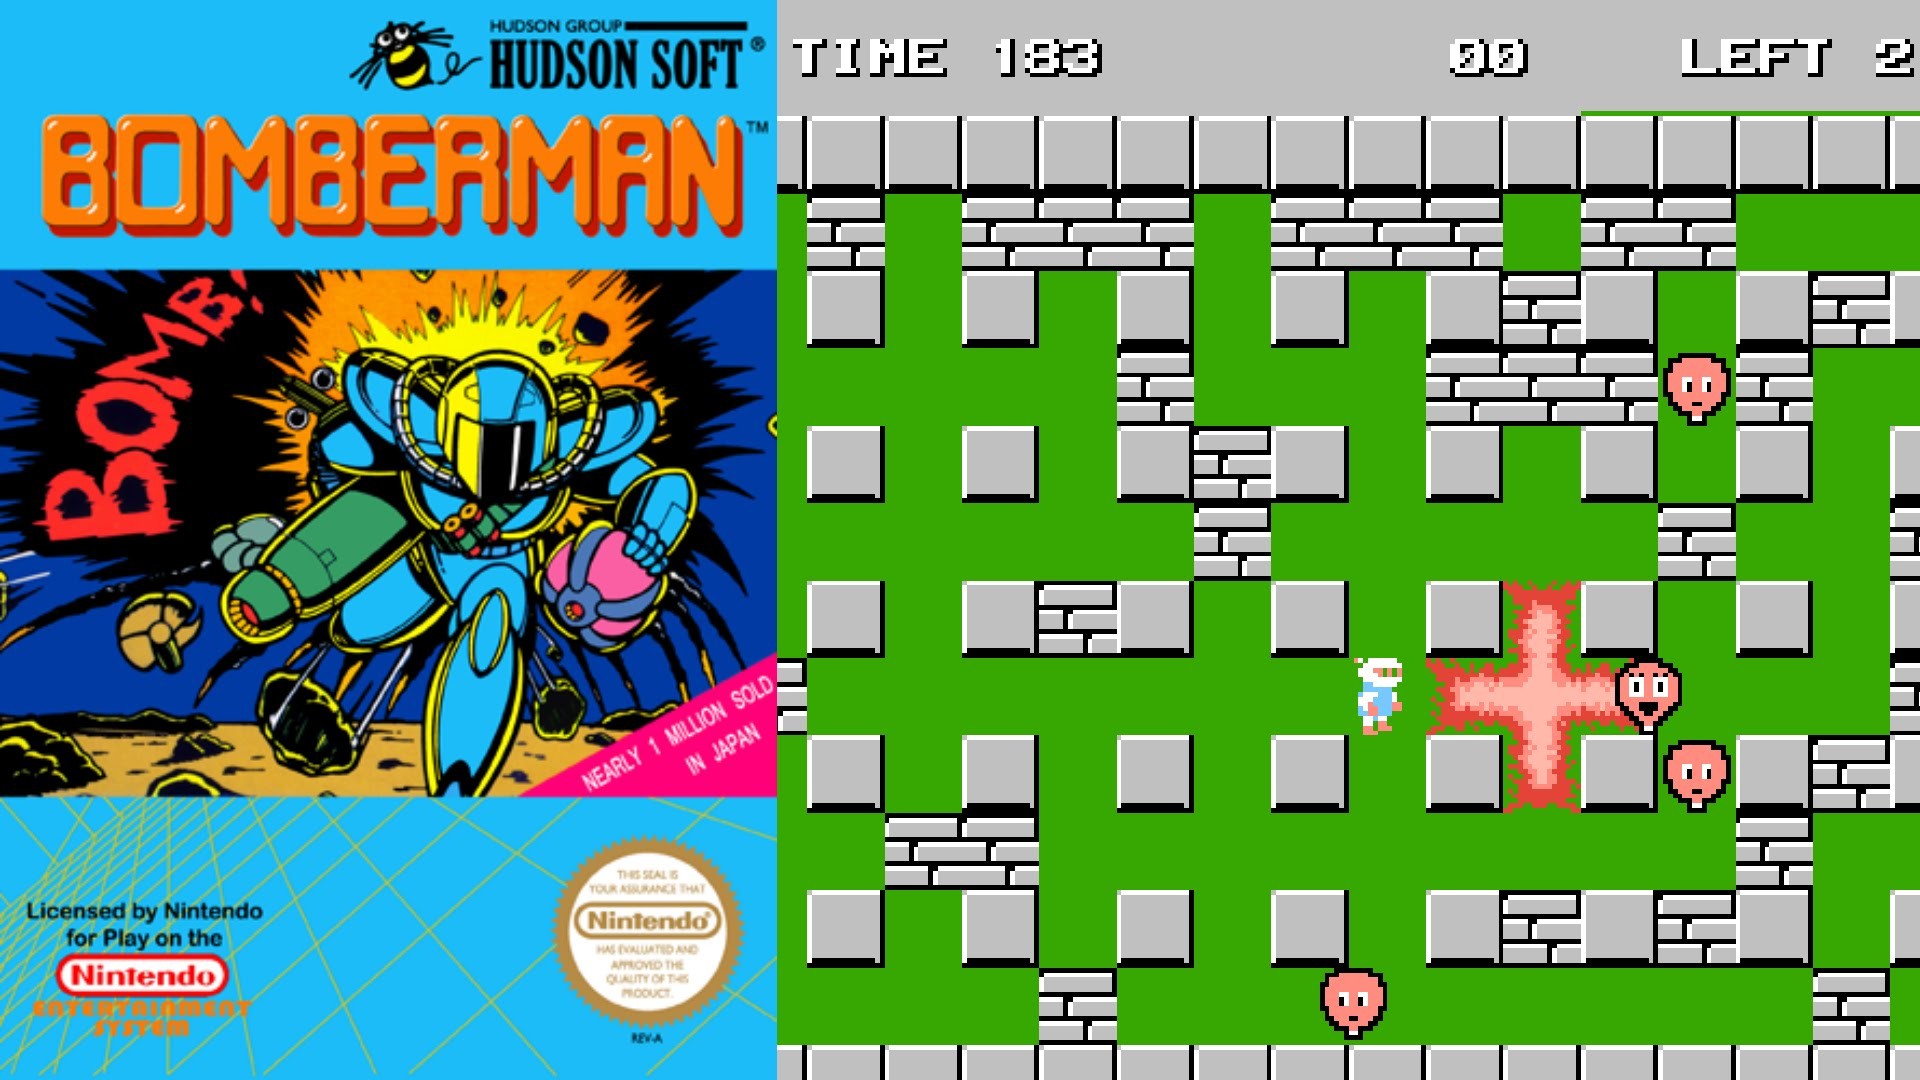 1920x1080 Youri speelt Retro Games -Bomberman [NES] - YouTube